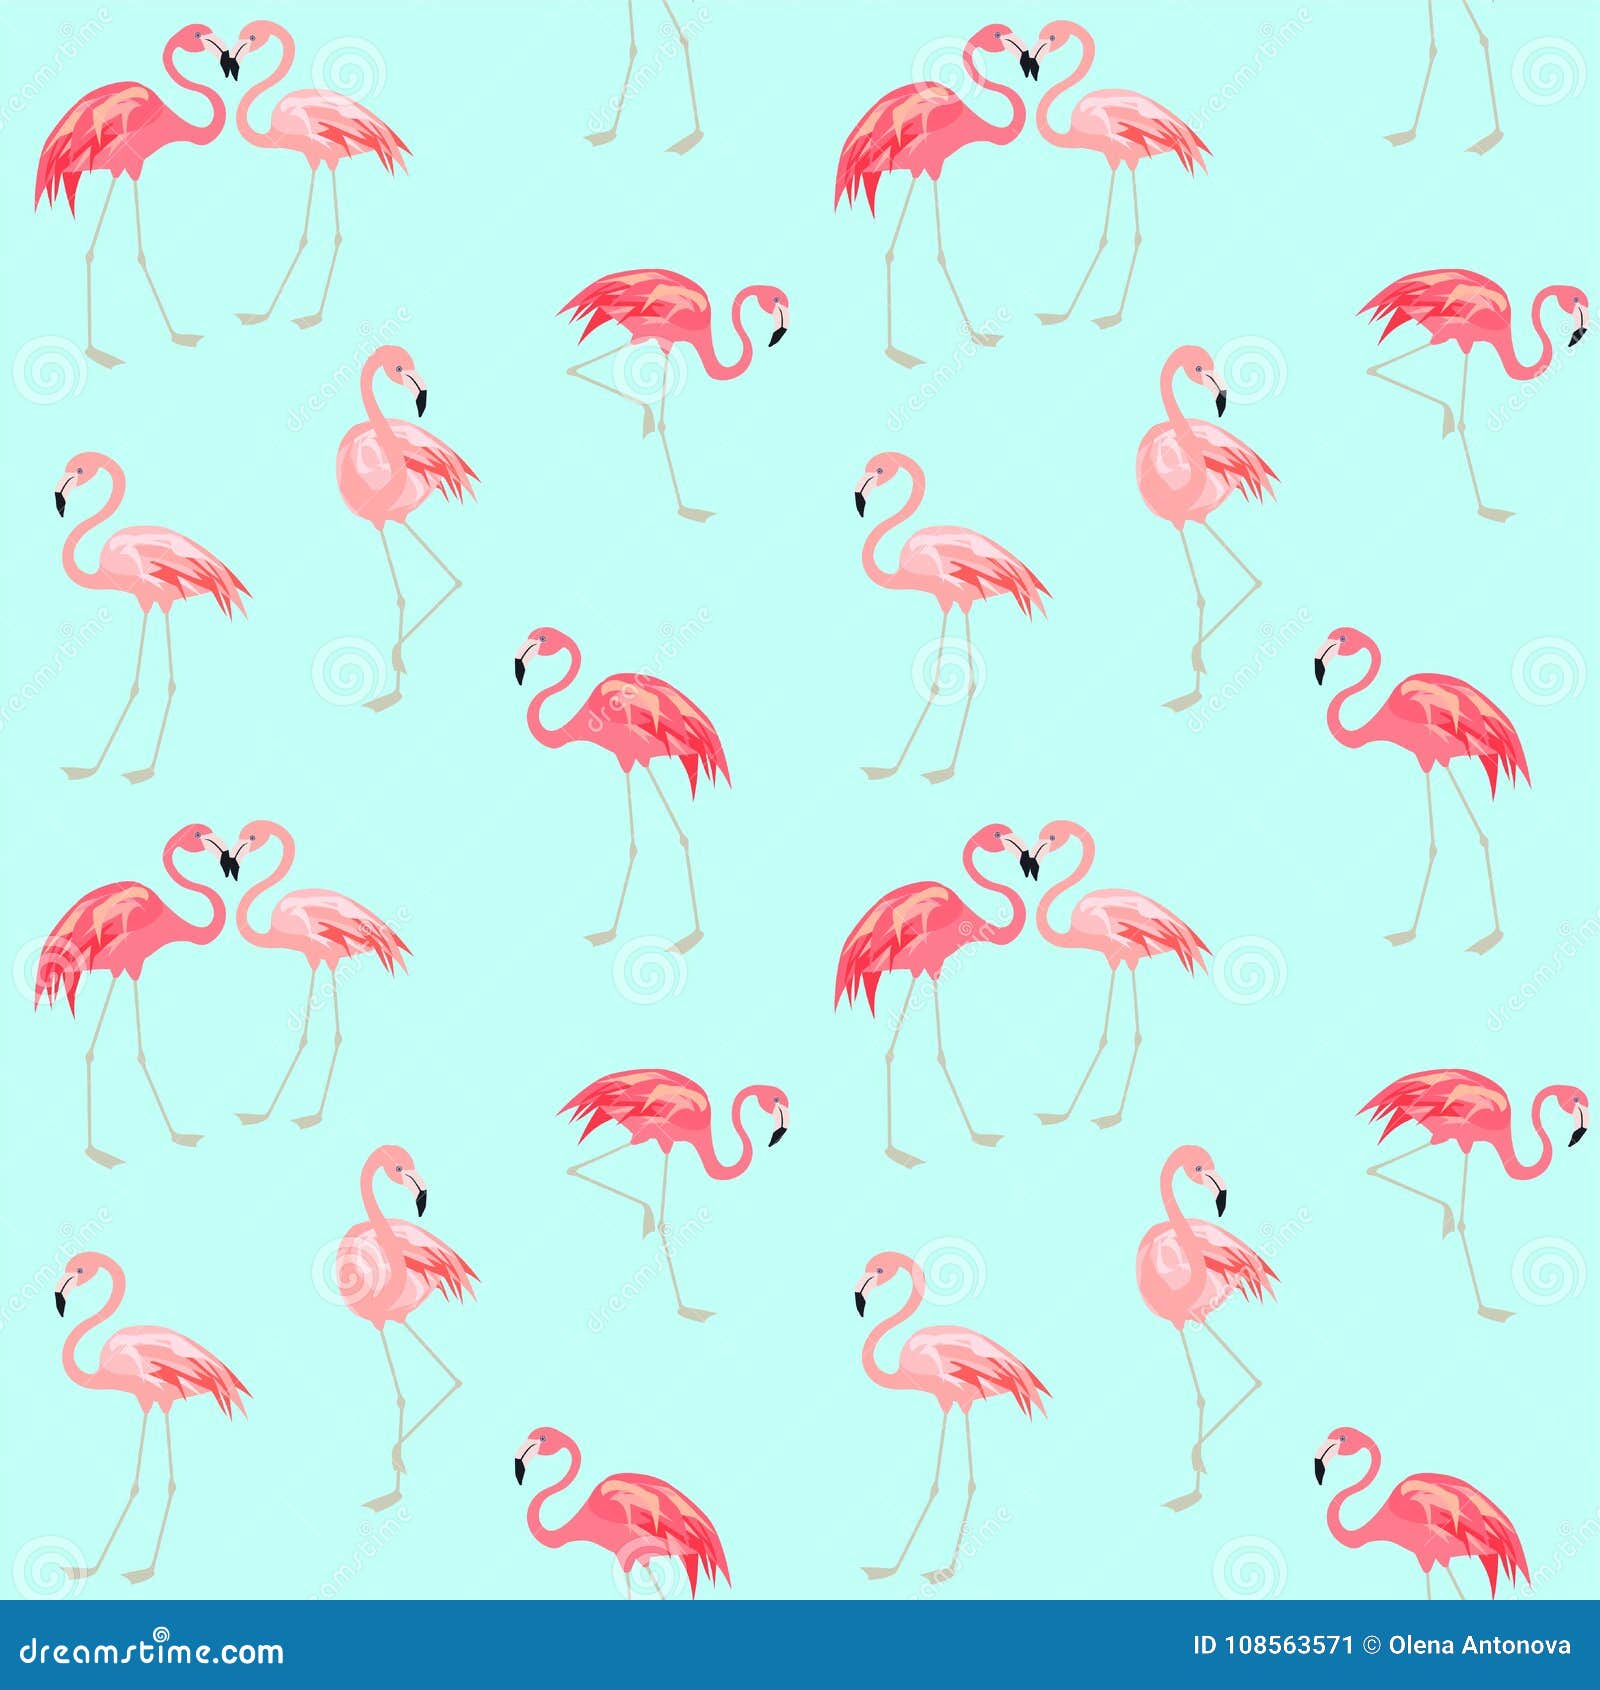 HD wallpaper flamingo  Wallpaper Flare